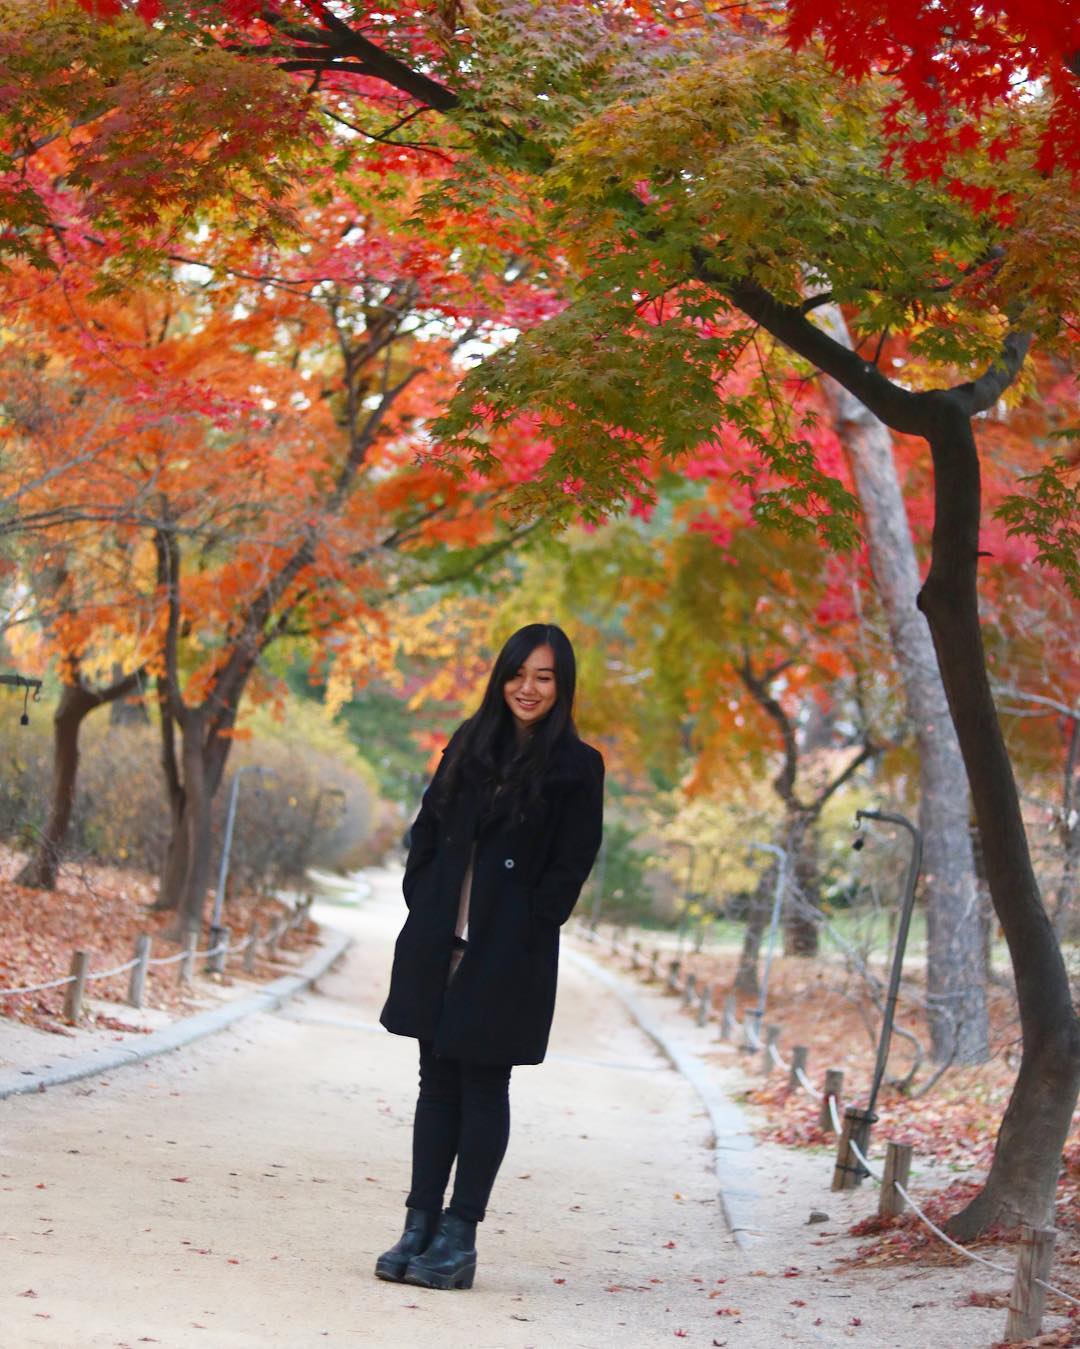 Công viên Haneul Gongwon 하늘공원